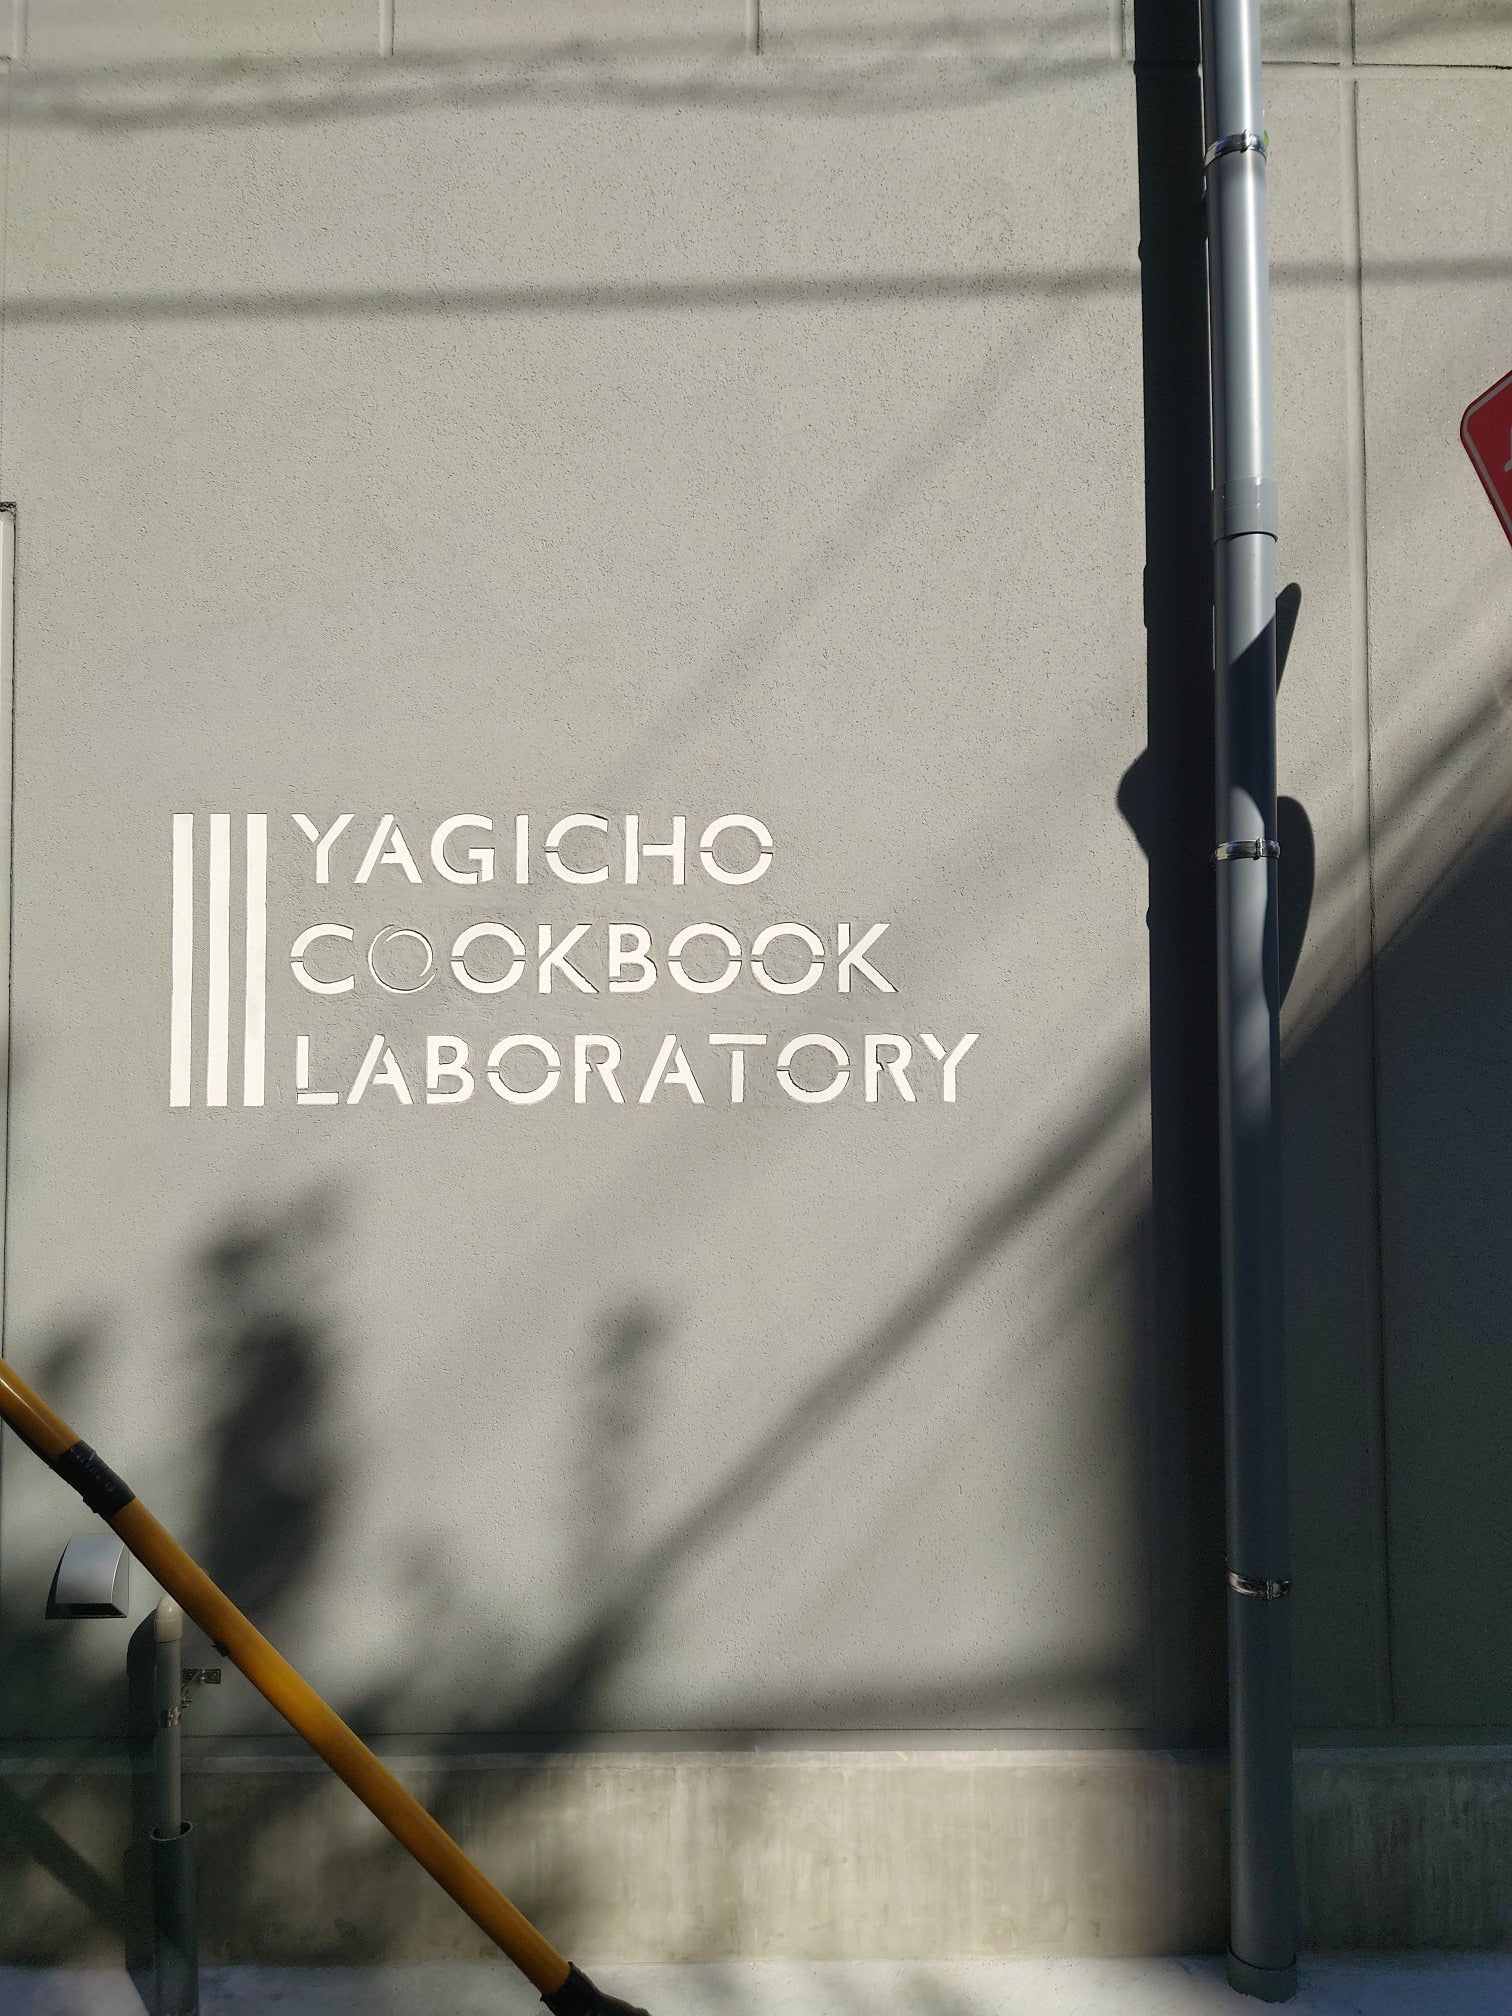 八木長本店新工場とYAGICHO COOKBOOK LABORATORY開業につきお知らせ